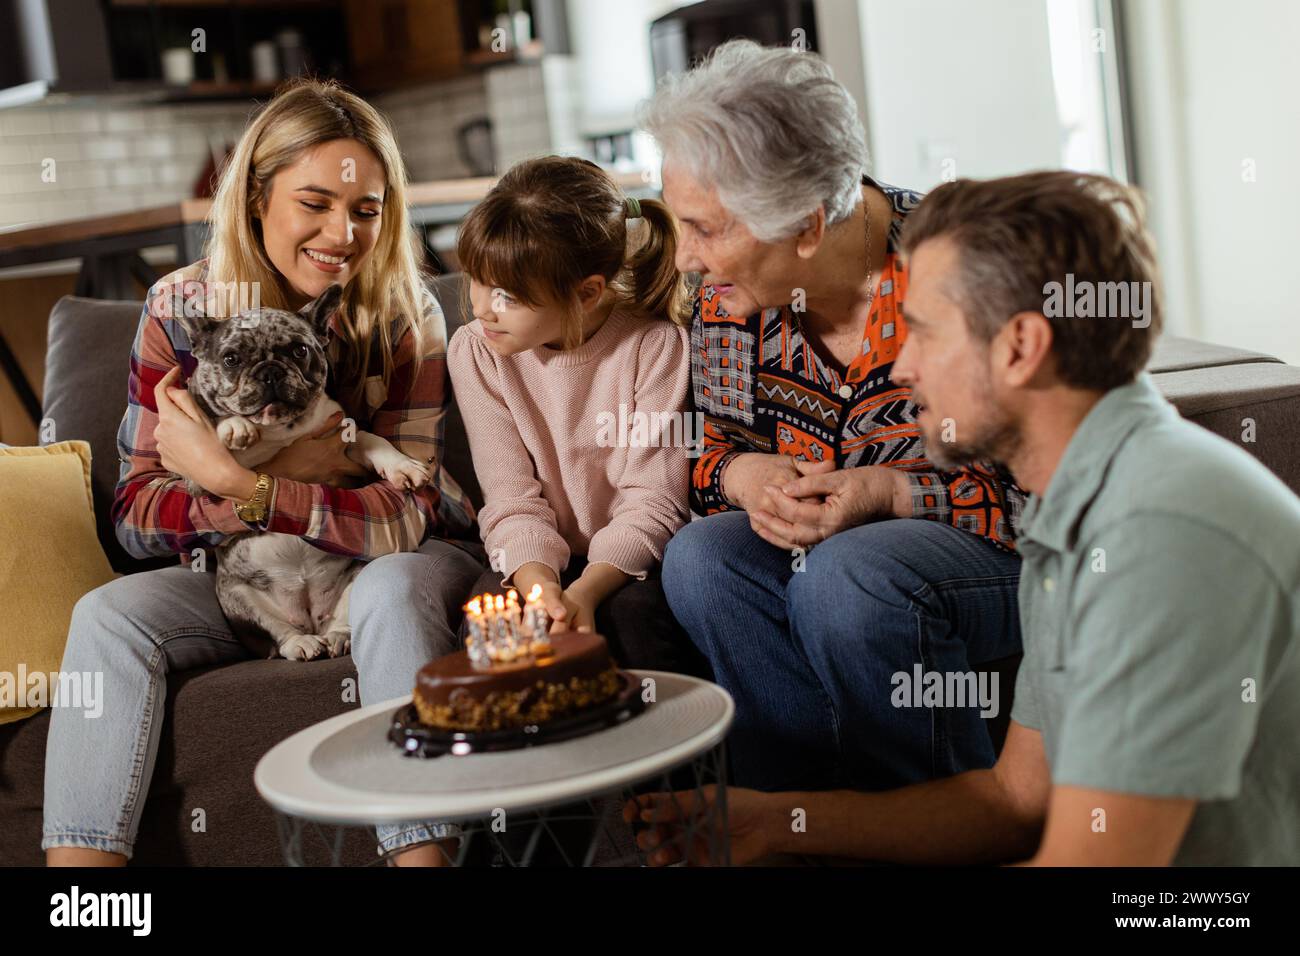 Une scène réconfortante se déroule alors qu'une famille multigénérationnelle se réunit sur un canapé pour présenter un gâteau d'anniversaire à une grand-mère ravie, créant ainsi des souvenirs Banque D'Images